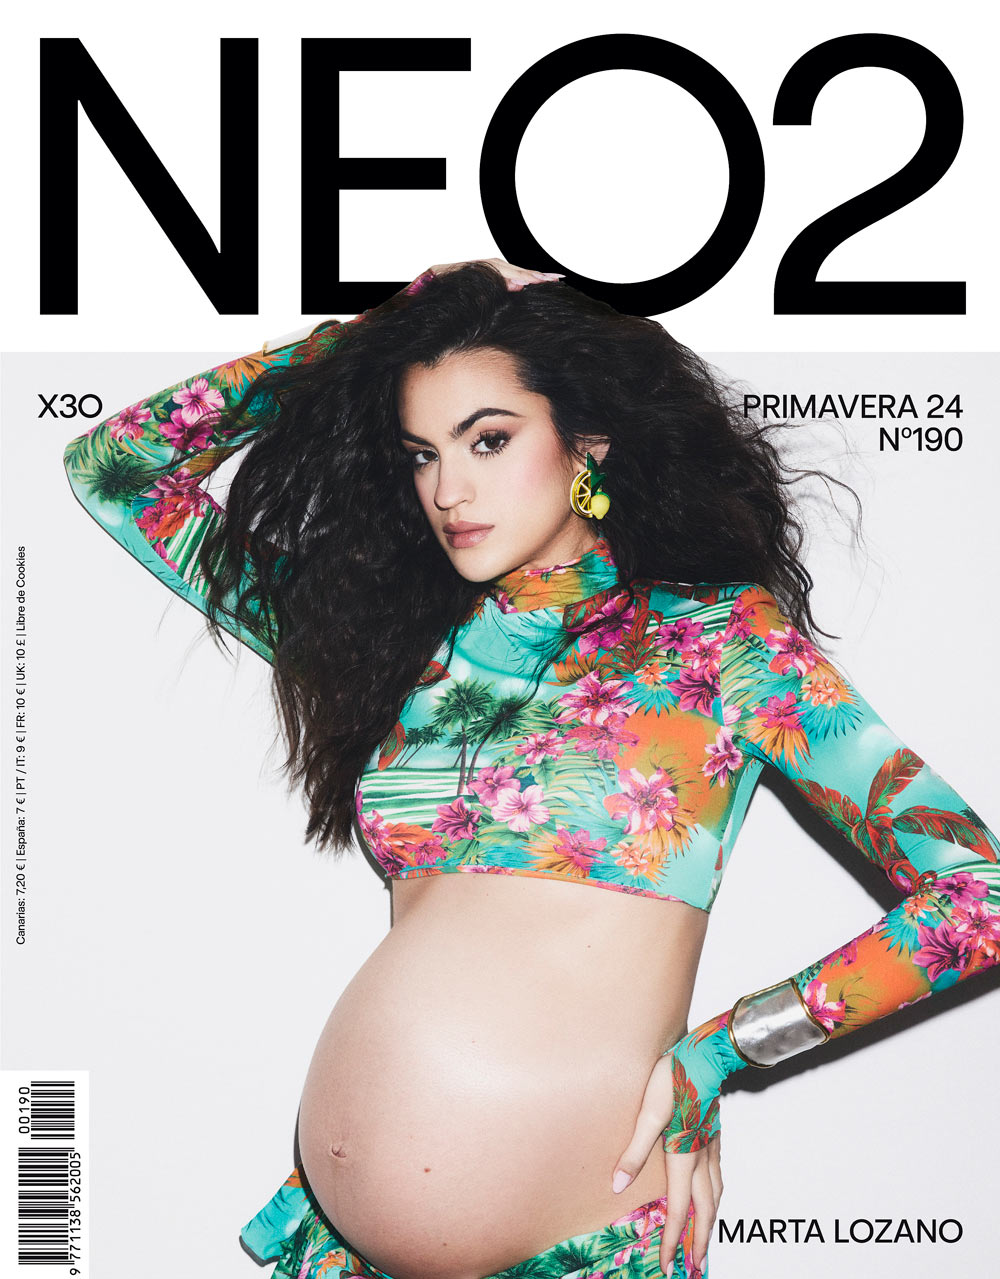 marta lozano portada embarazada revista neo2